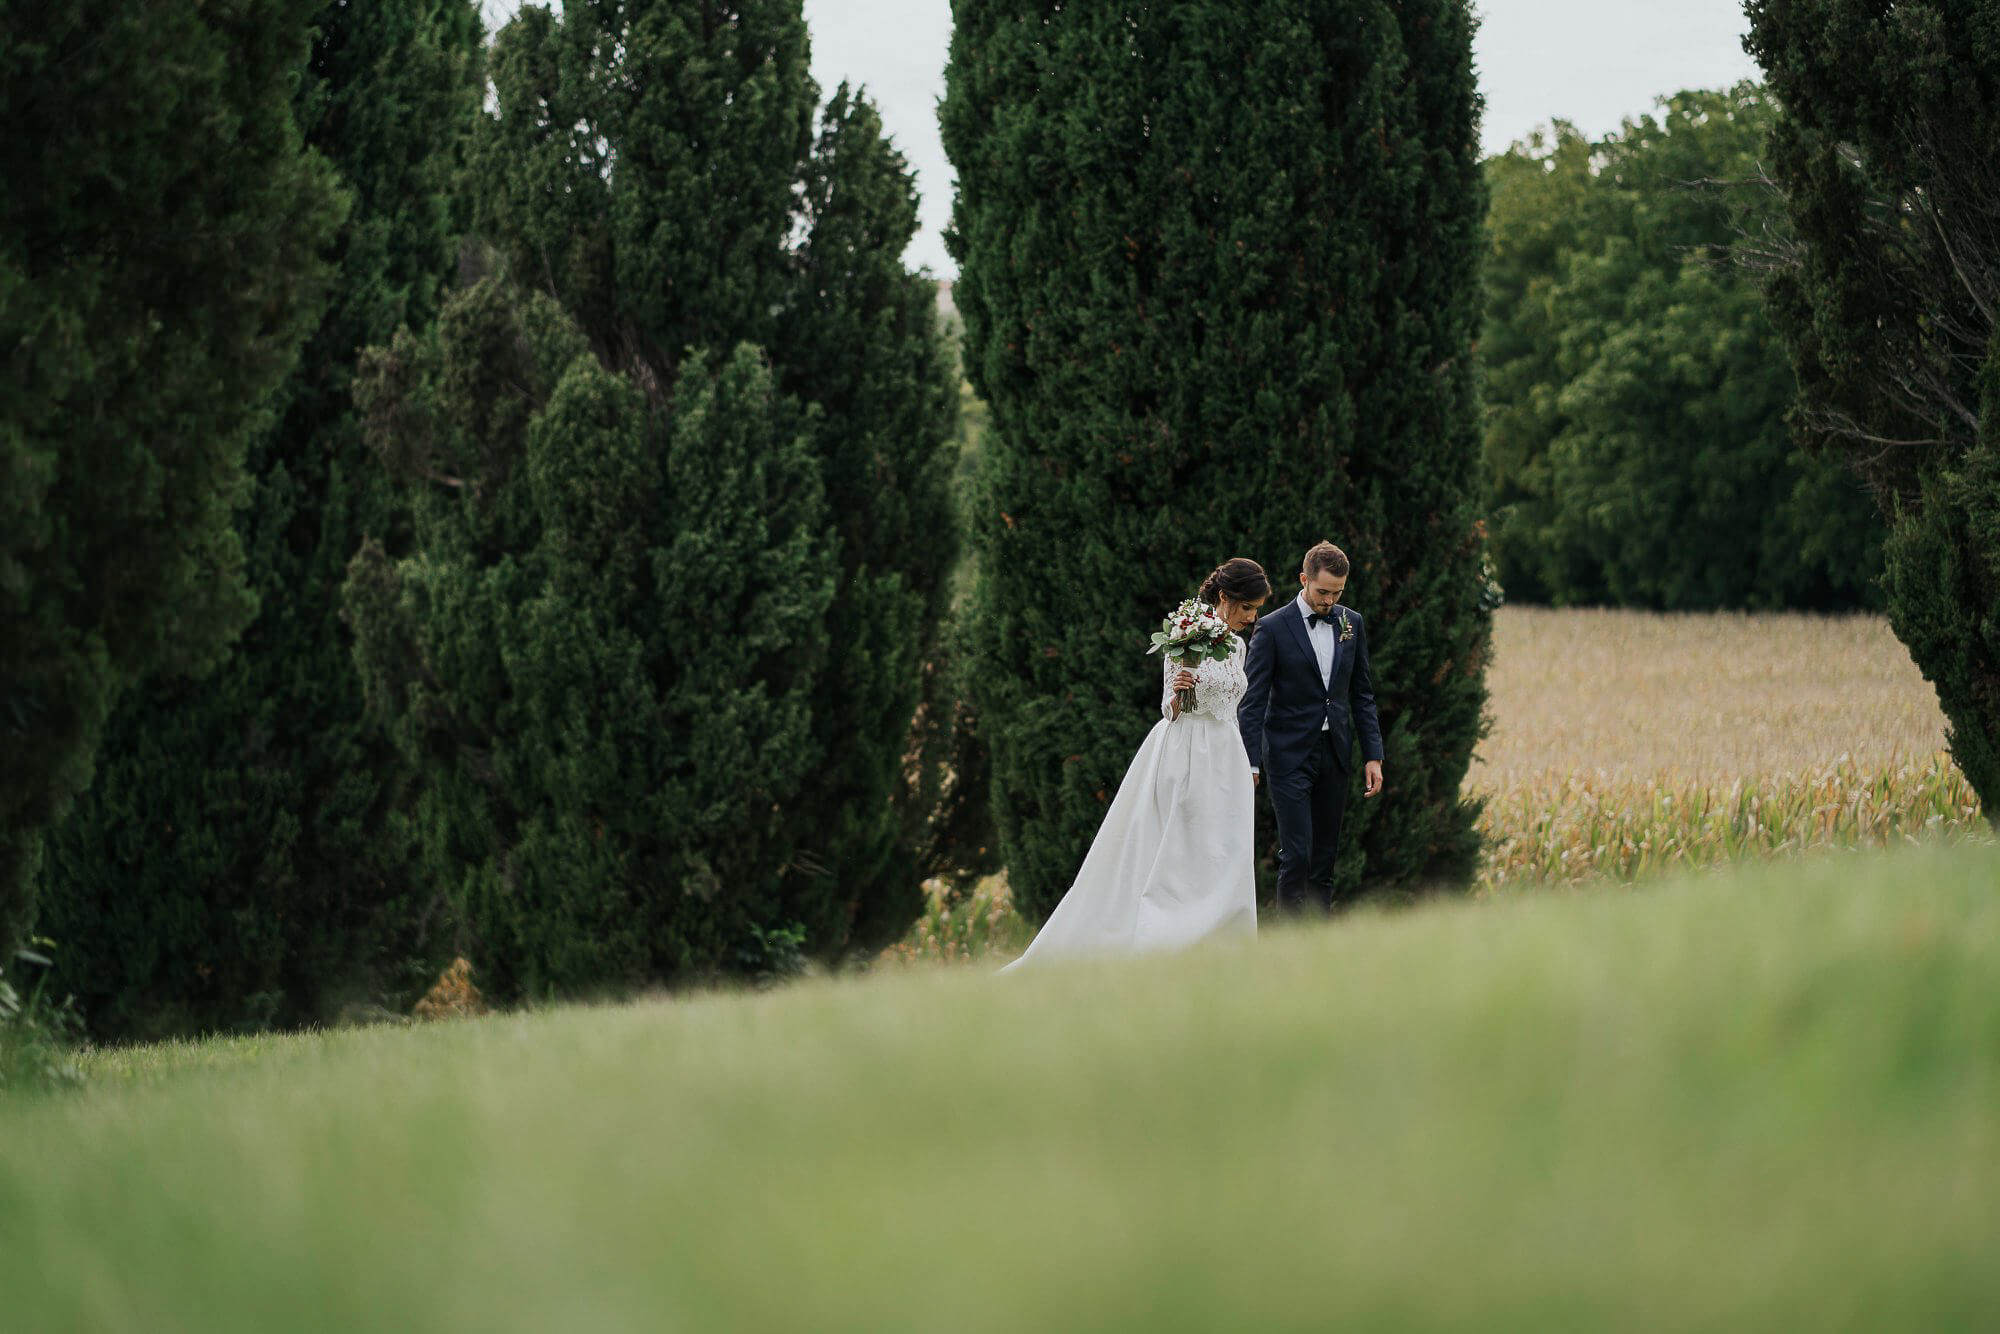 Servizio Fotografico di Matrimonio a Treviso, location Villa Lucheschi. Ecco Deborah e Niklas. Michelino Studio, fotografi professionisti di matrimonio in Veneto.